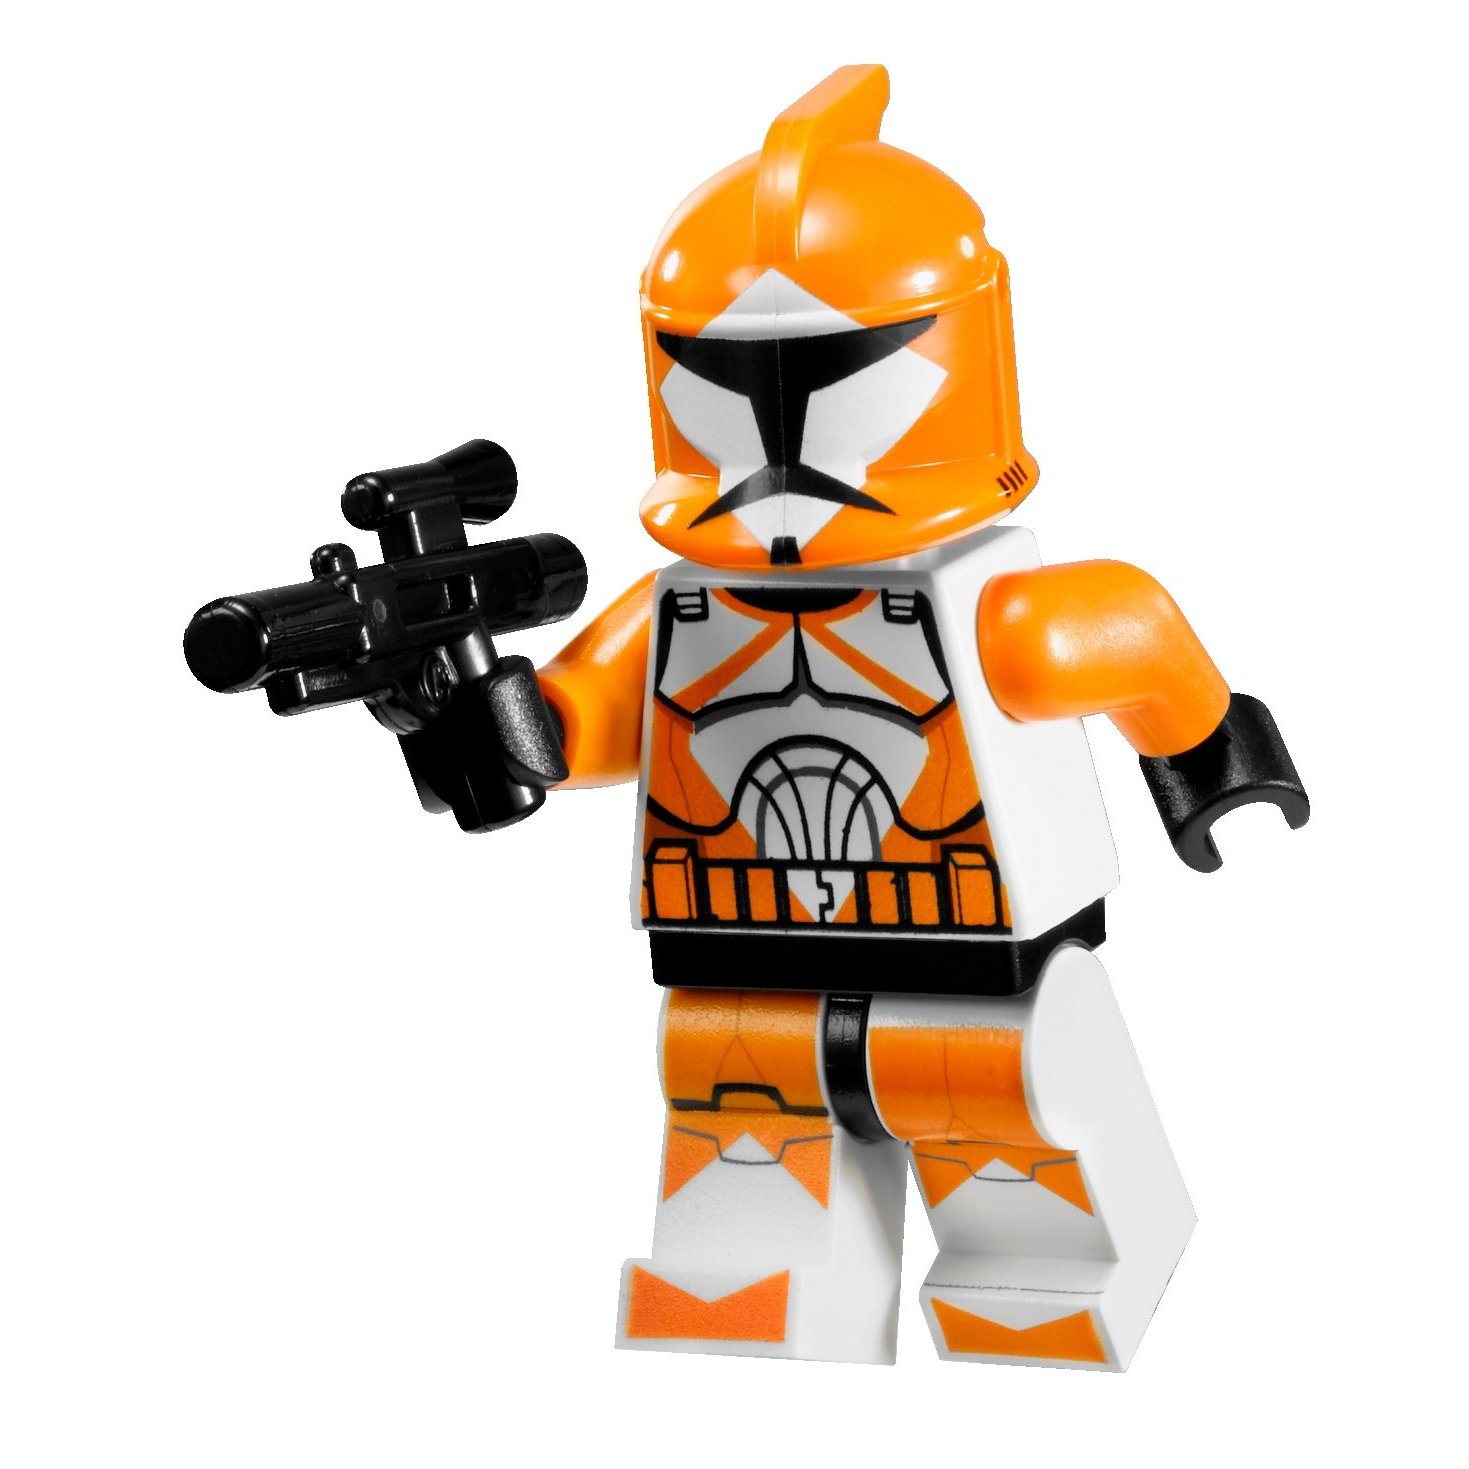 LEGO set database: 7913 clone